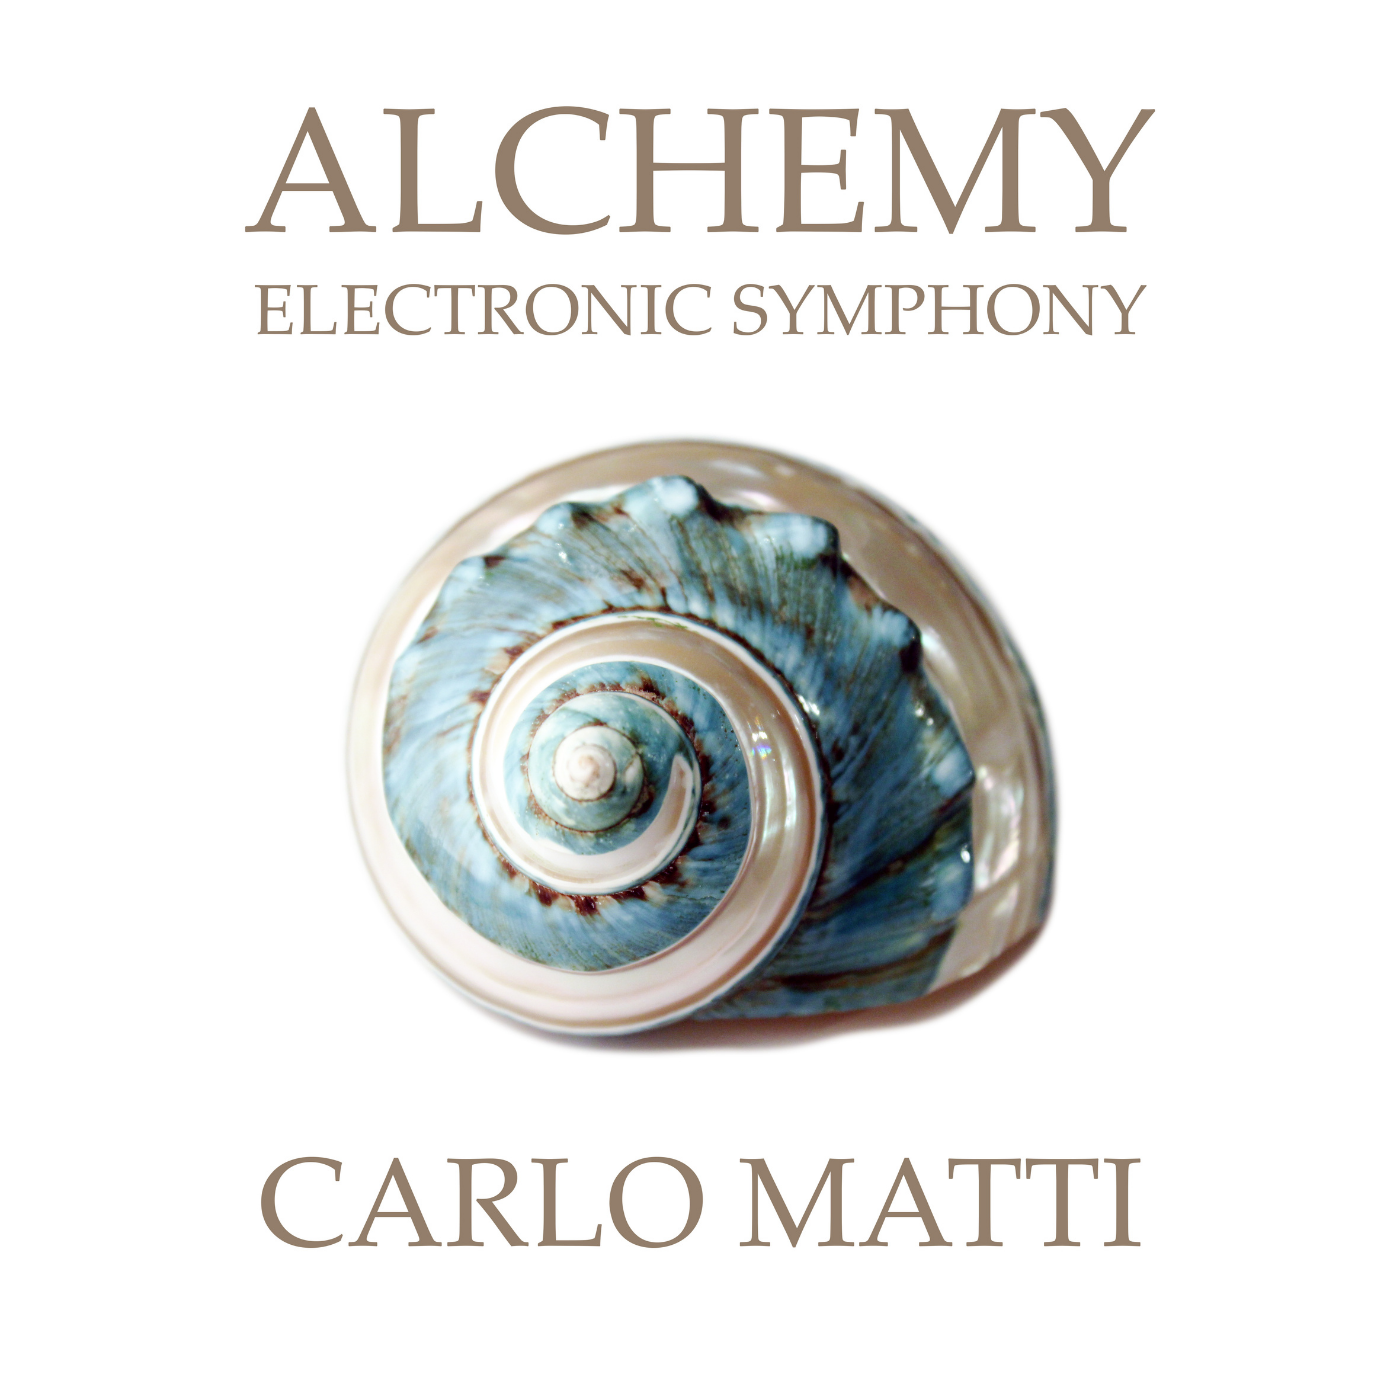 Alchemy Electronic Symphony